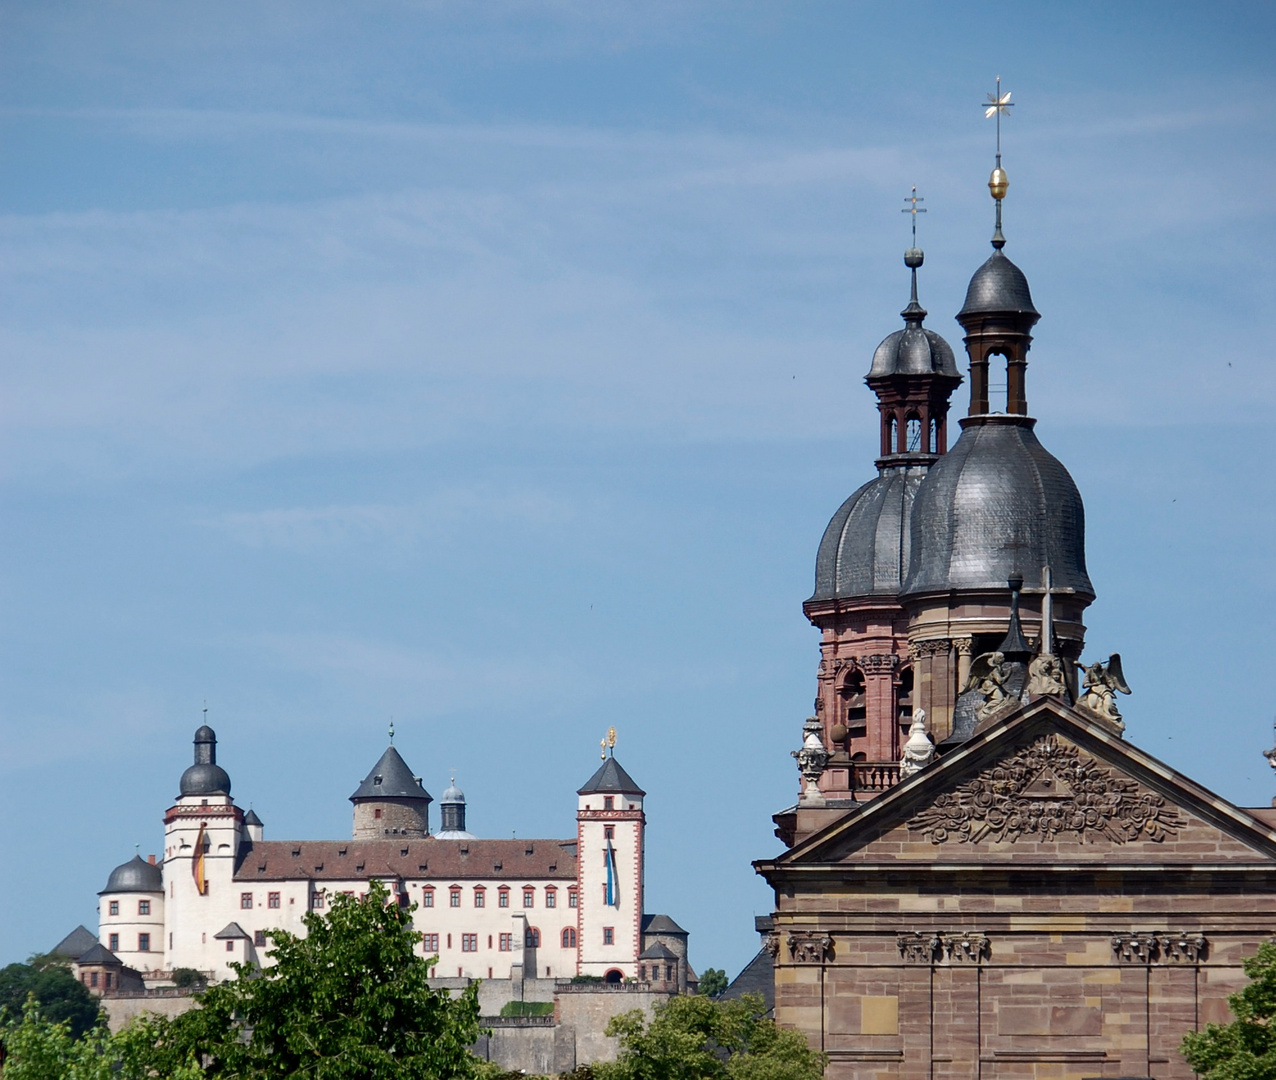 Würzburg - Festung Marienburg - vorne der Turm von St. Michael, hintere Turm von der Neubaukirche